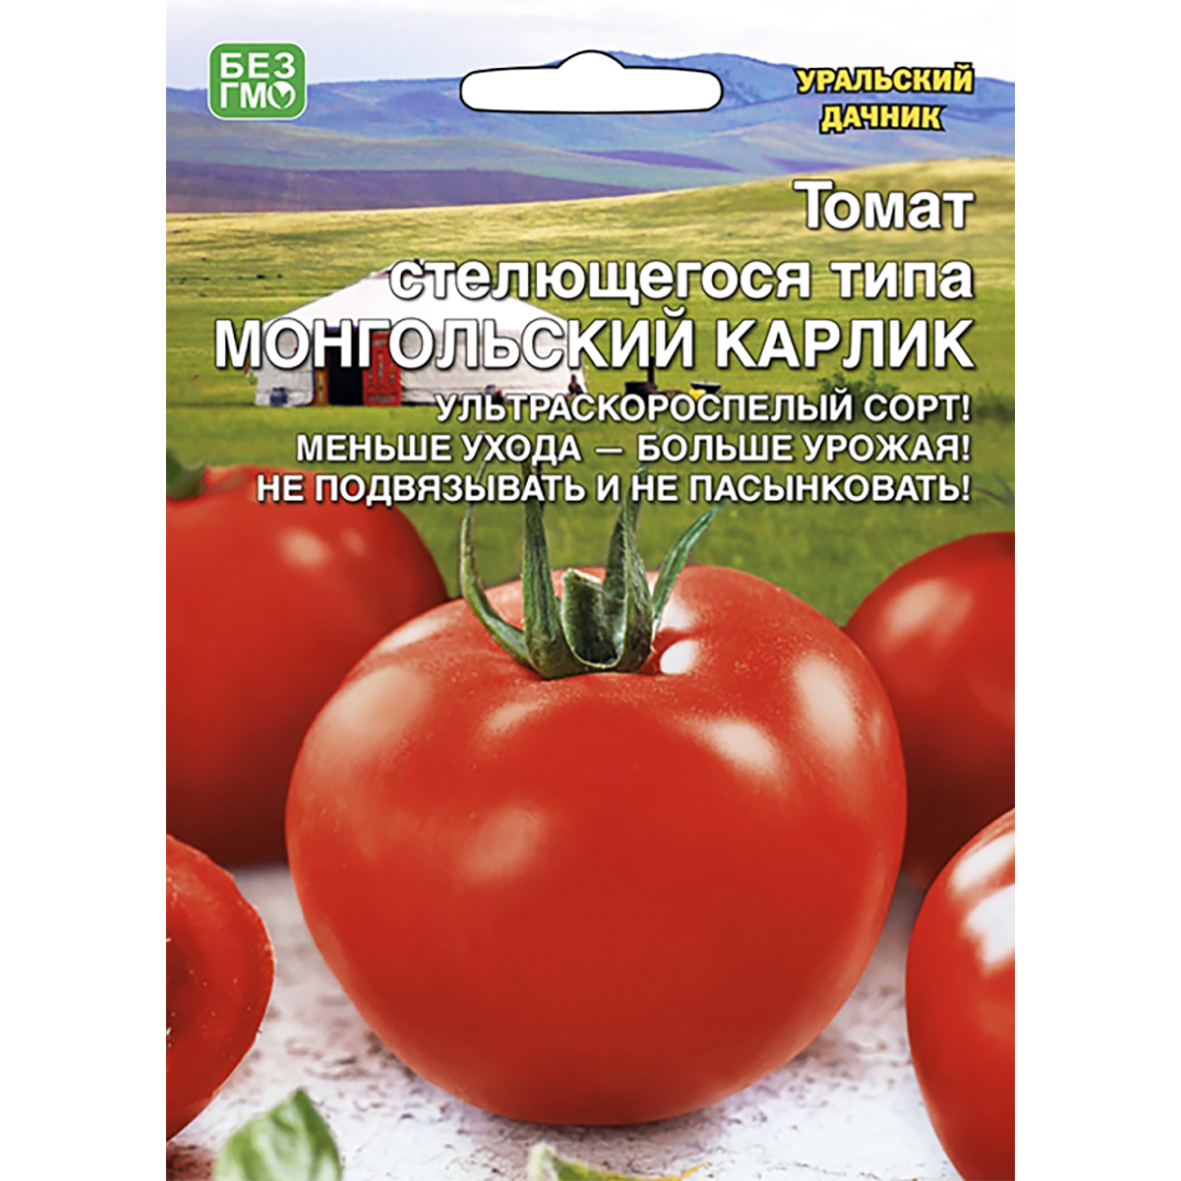 Купить семена томатов (помидоров) в интернет-магазине Semena.ru сбесплатной доставкой почтой России